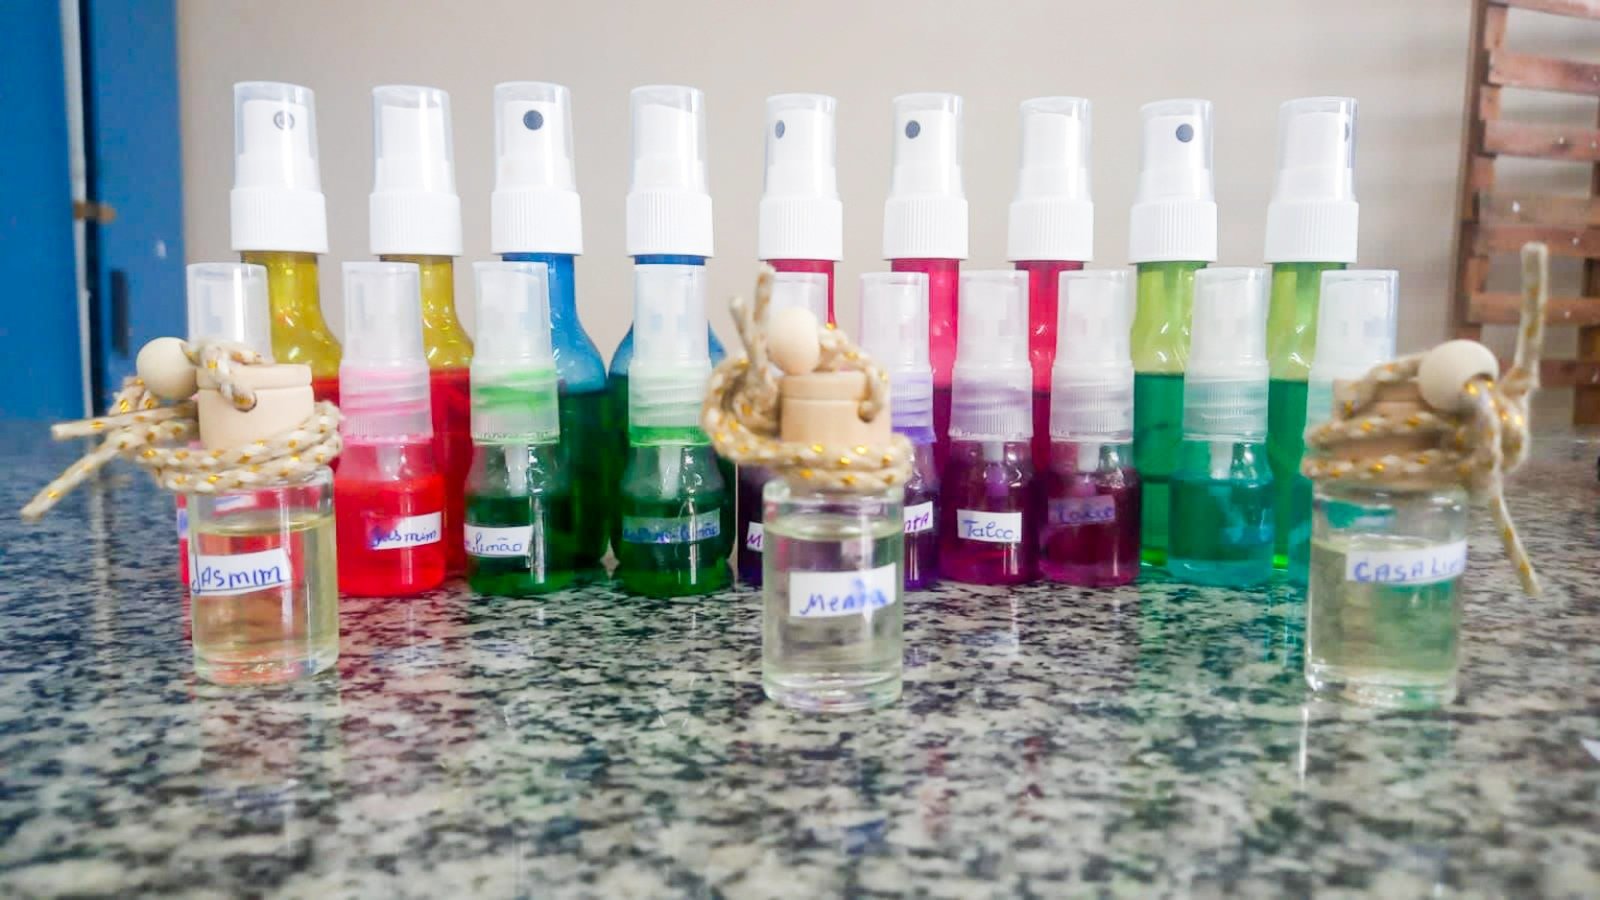 Aromatizantes e outros produtos de limpeza foram produzidos em aulas de química dos alunos da EJA - Foto: Arquivo Pessoal/Manoel Jeffreys